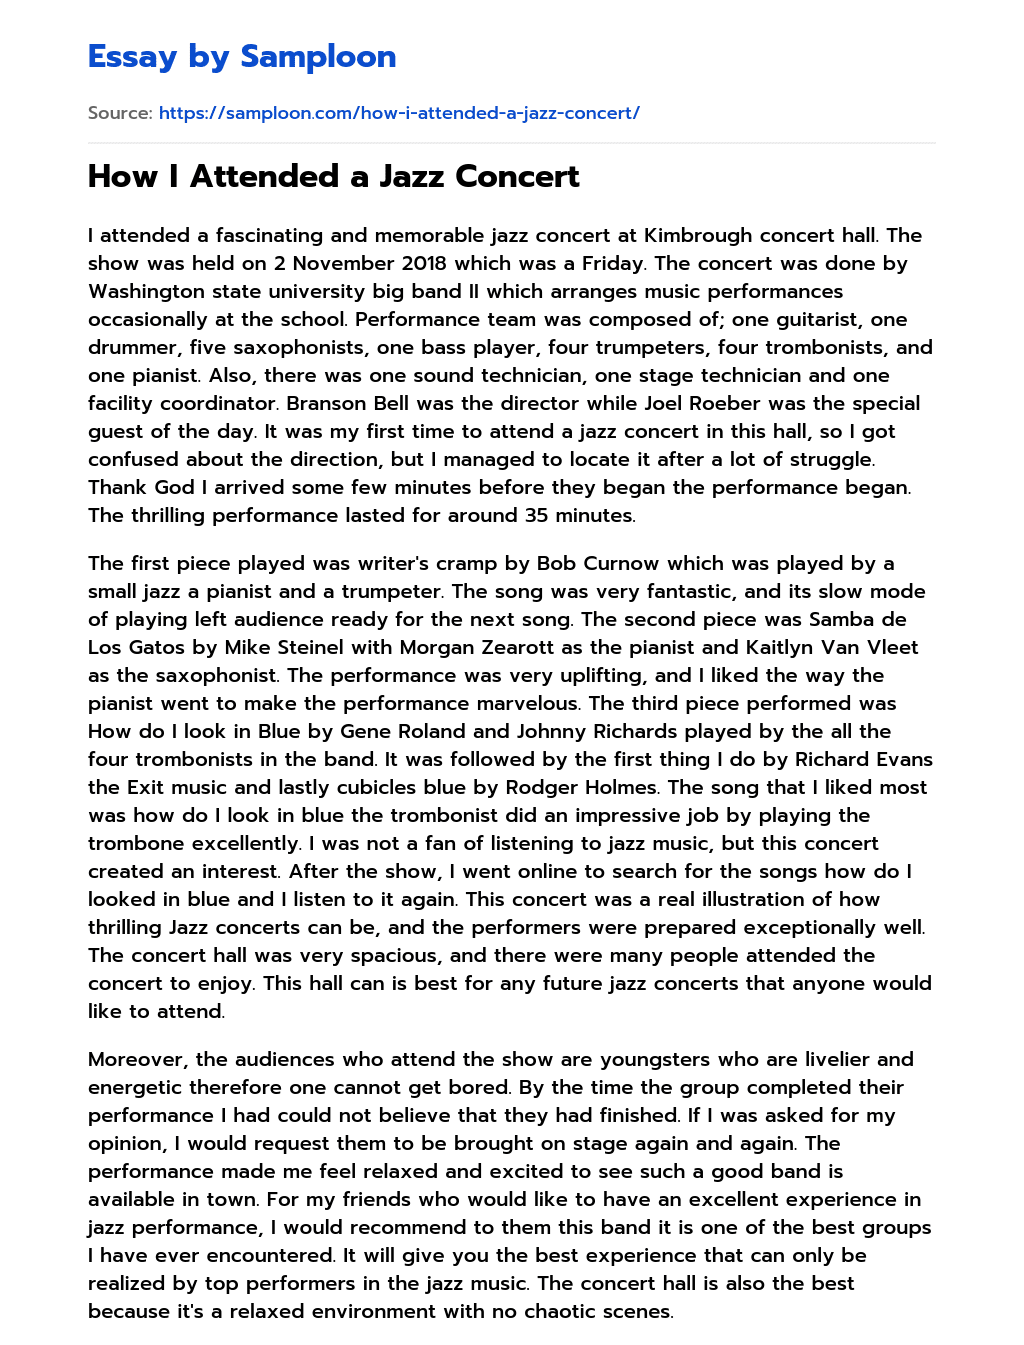 descriptive essay about concert